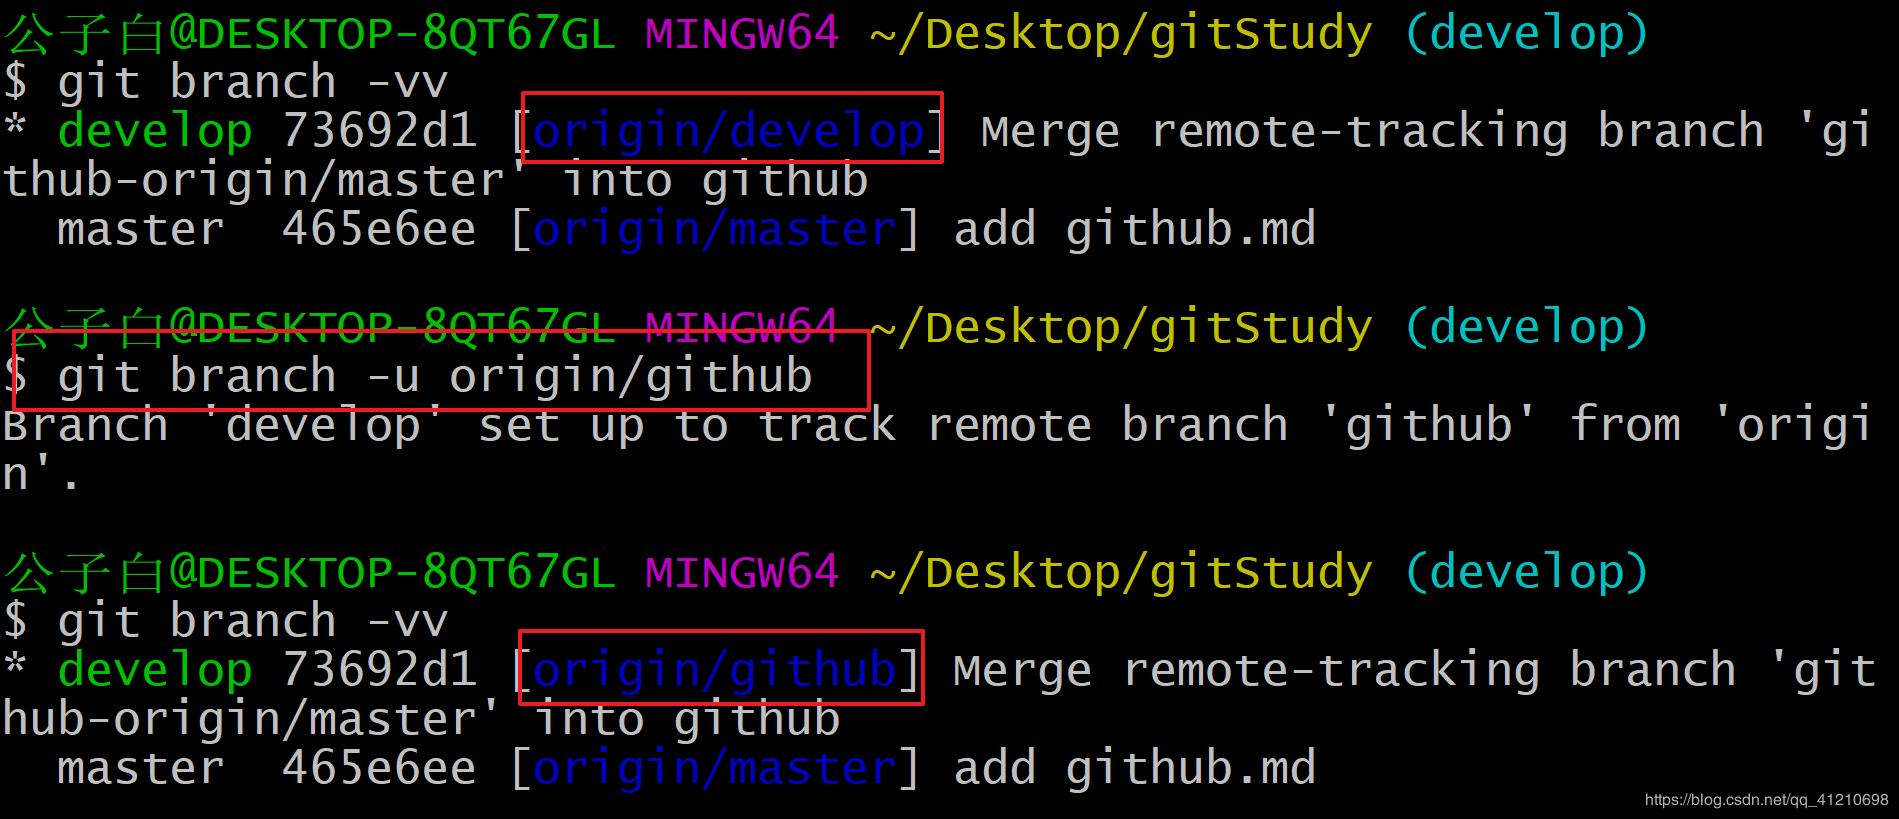 Vs code - в репозитории git слишком много активных изменений, будет включена только часть функций git. - ru.thehiramcollege.net